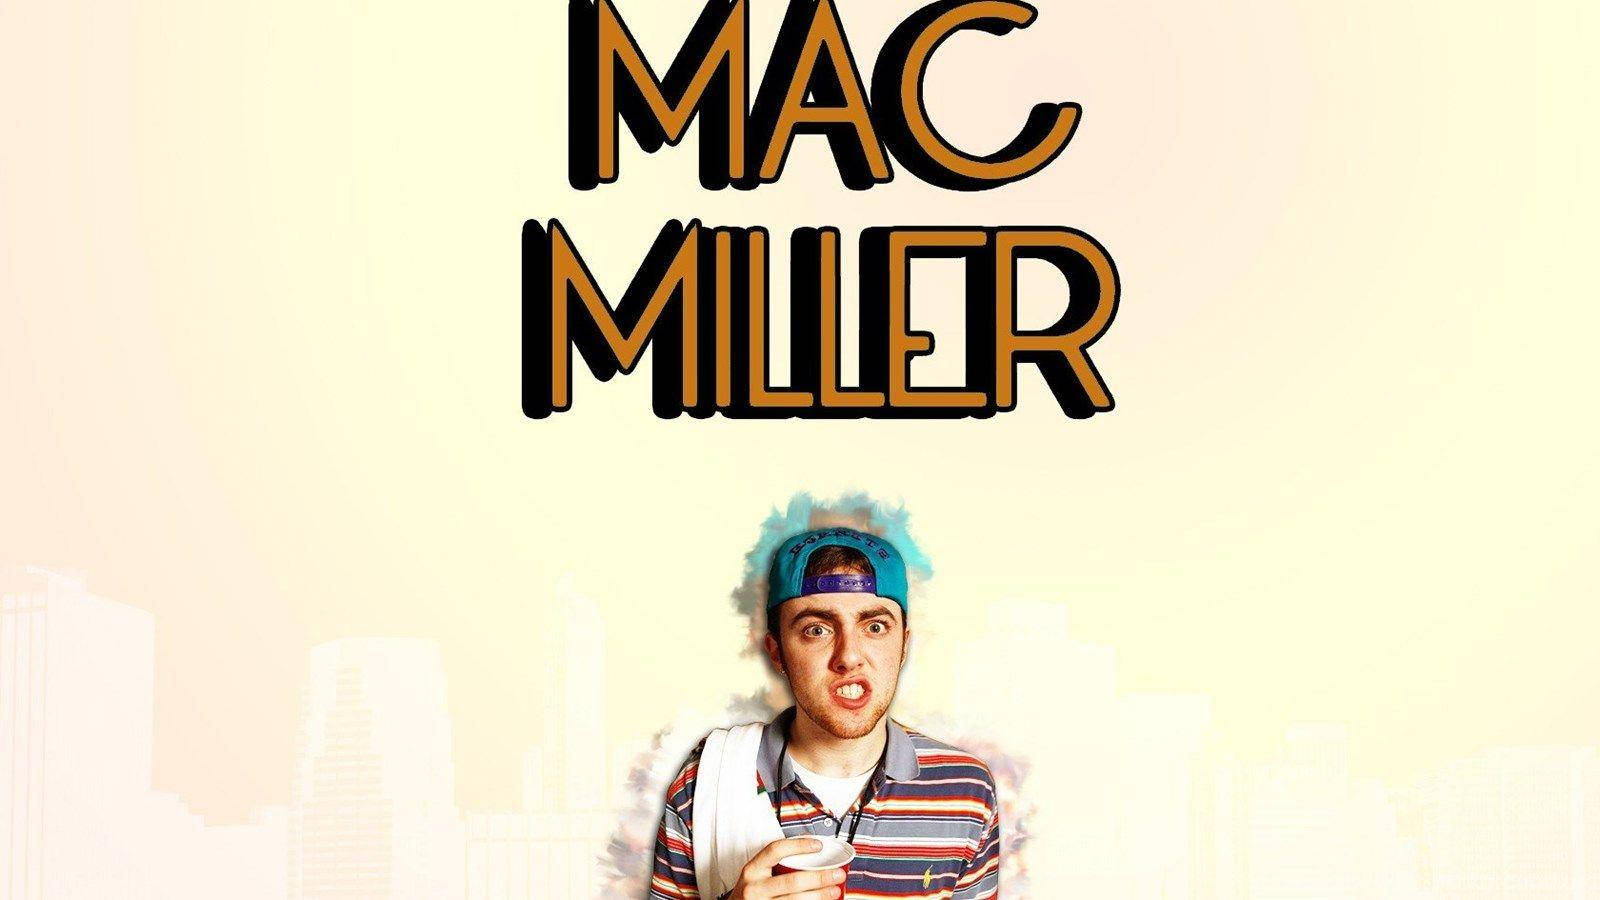 Mac Miller Yellow Wallpaper And Text Wallpaper